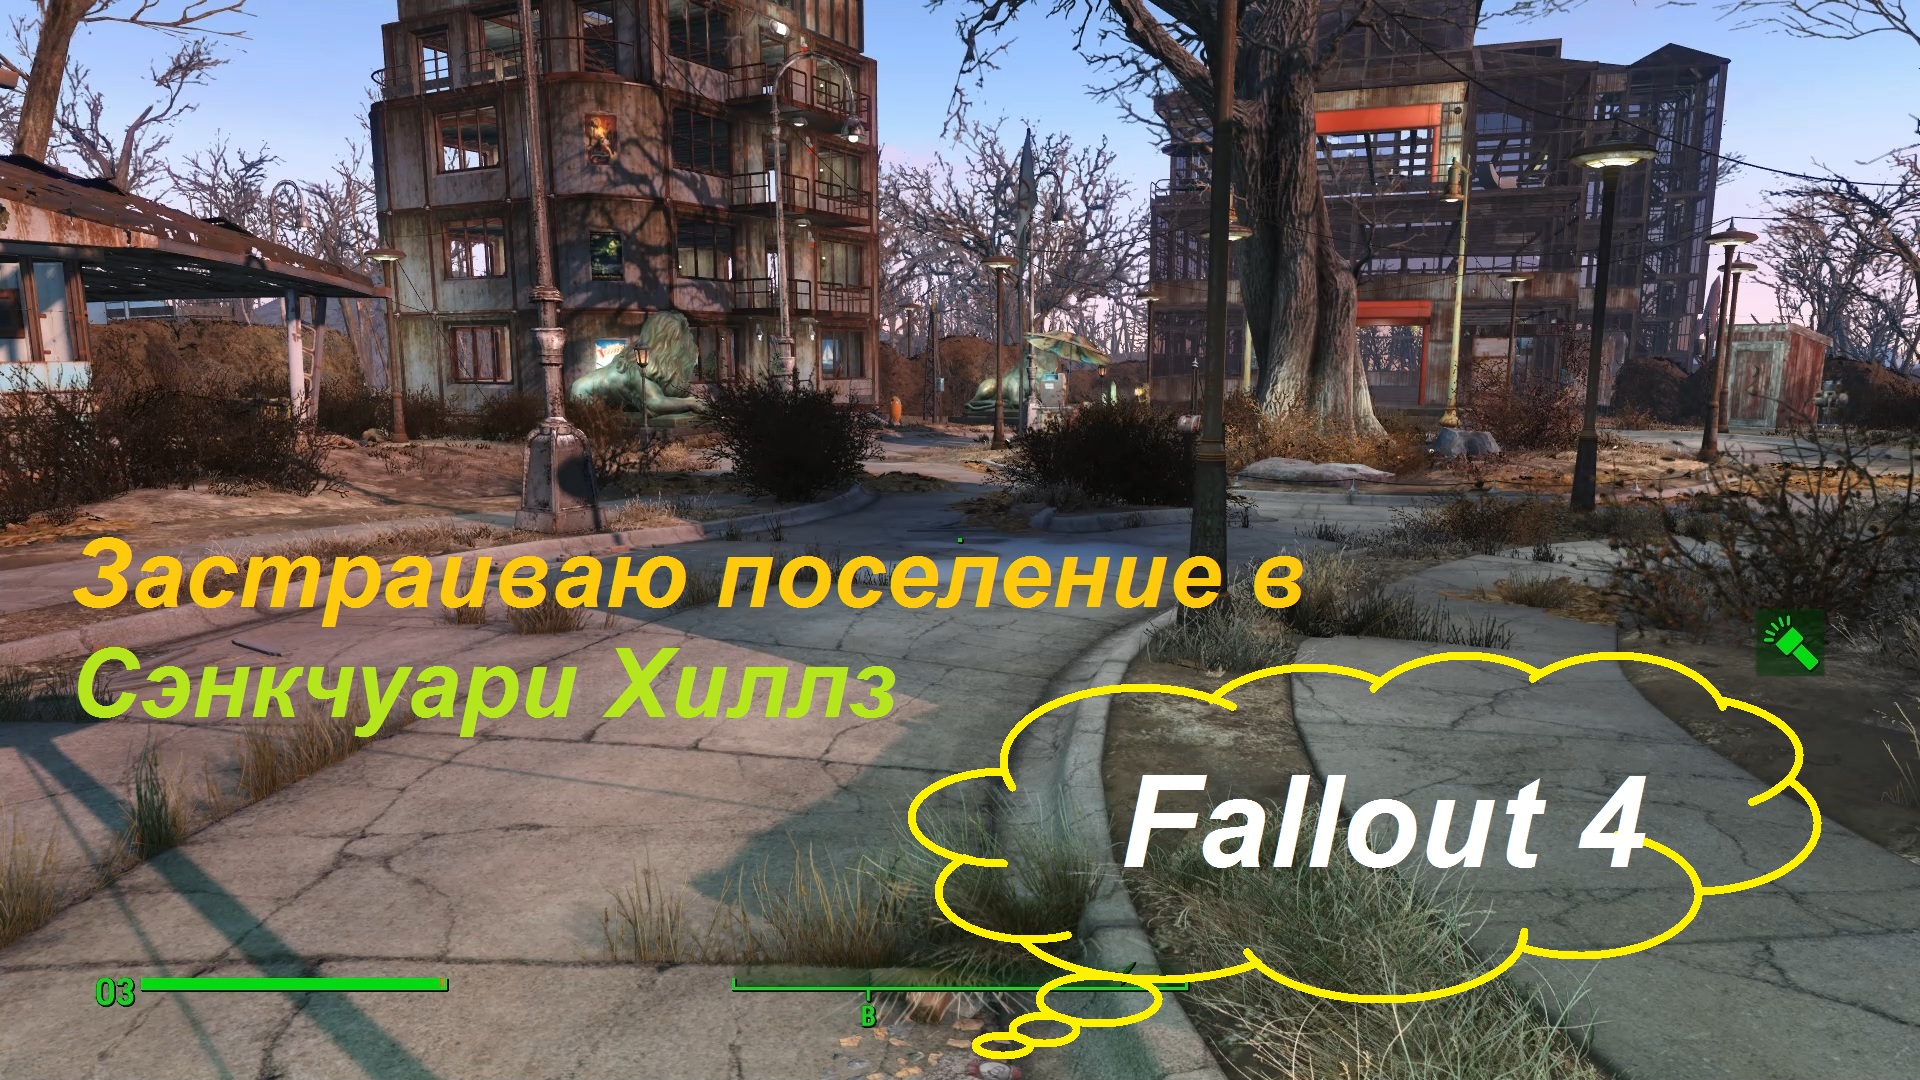 Fallout 4 восстановленный мост сэнкчуари фото 57